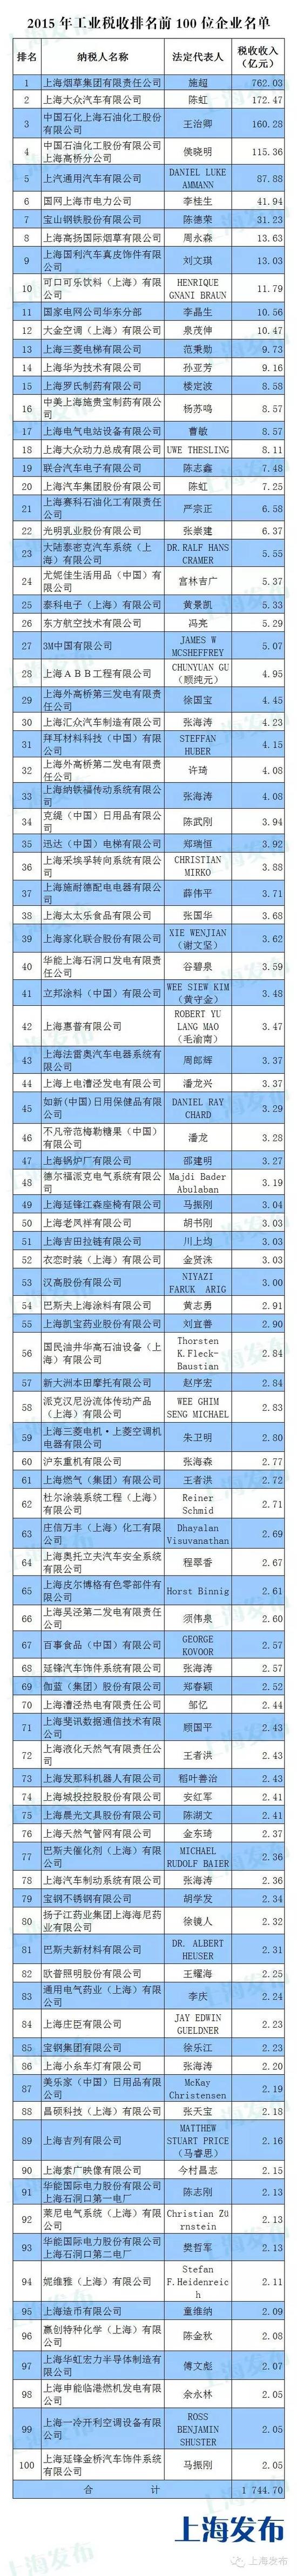 2015年上海工业和第三产业纳税百强企业名单